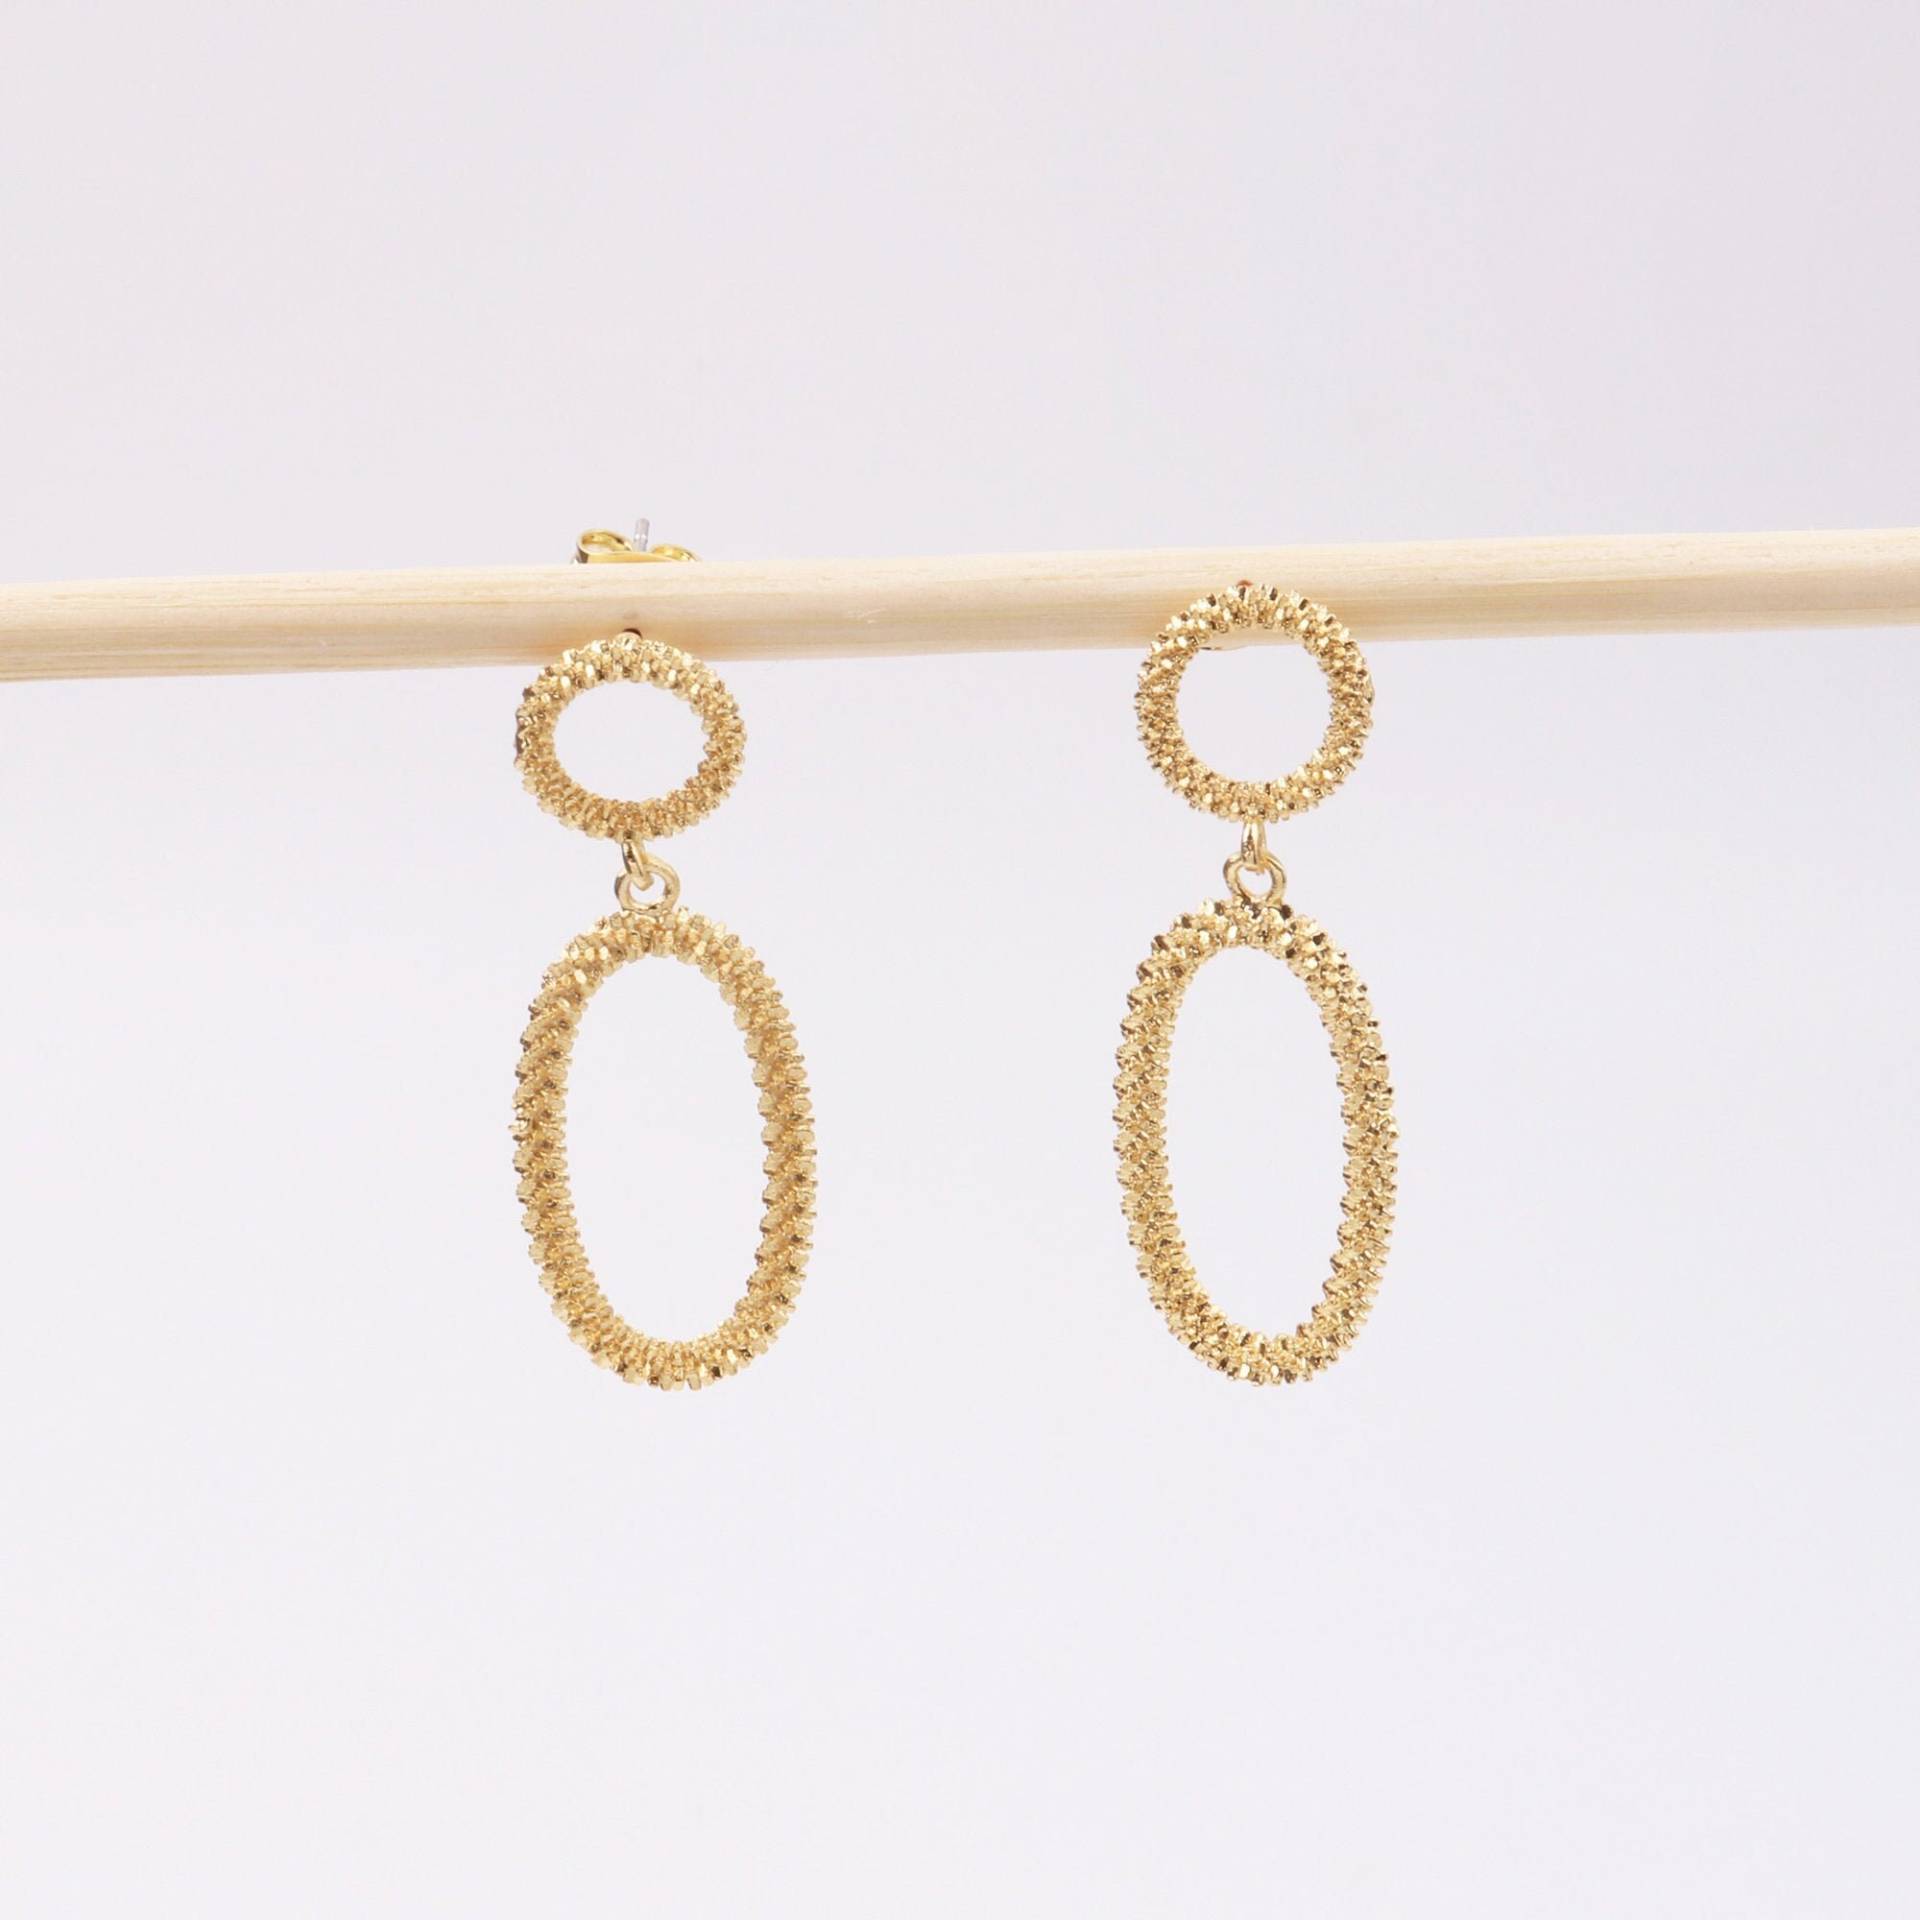 Custom Handmade 1 Paar Zierliche 27, 2mm 18Kt Gold Filled Oval Swing Anhänger Ohrringe Leichte Minimal Mode Boutique Marken von EUSUPPLIES